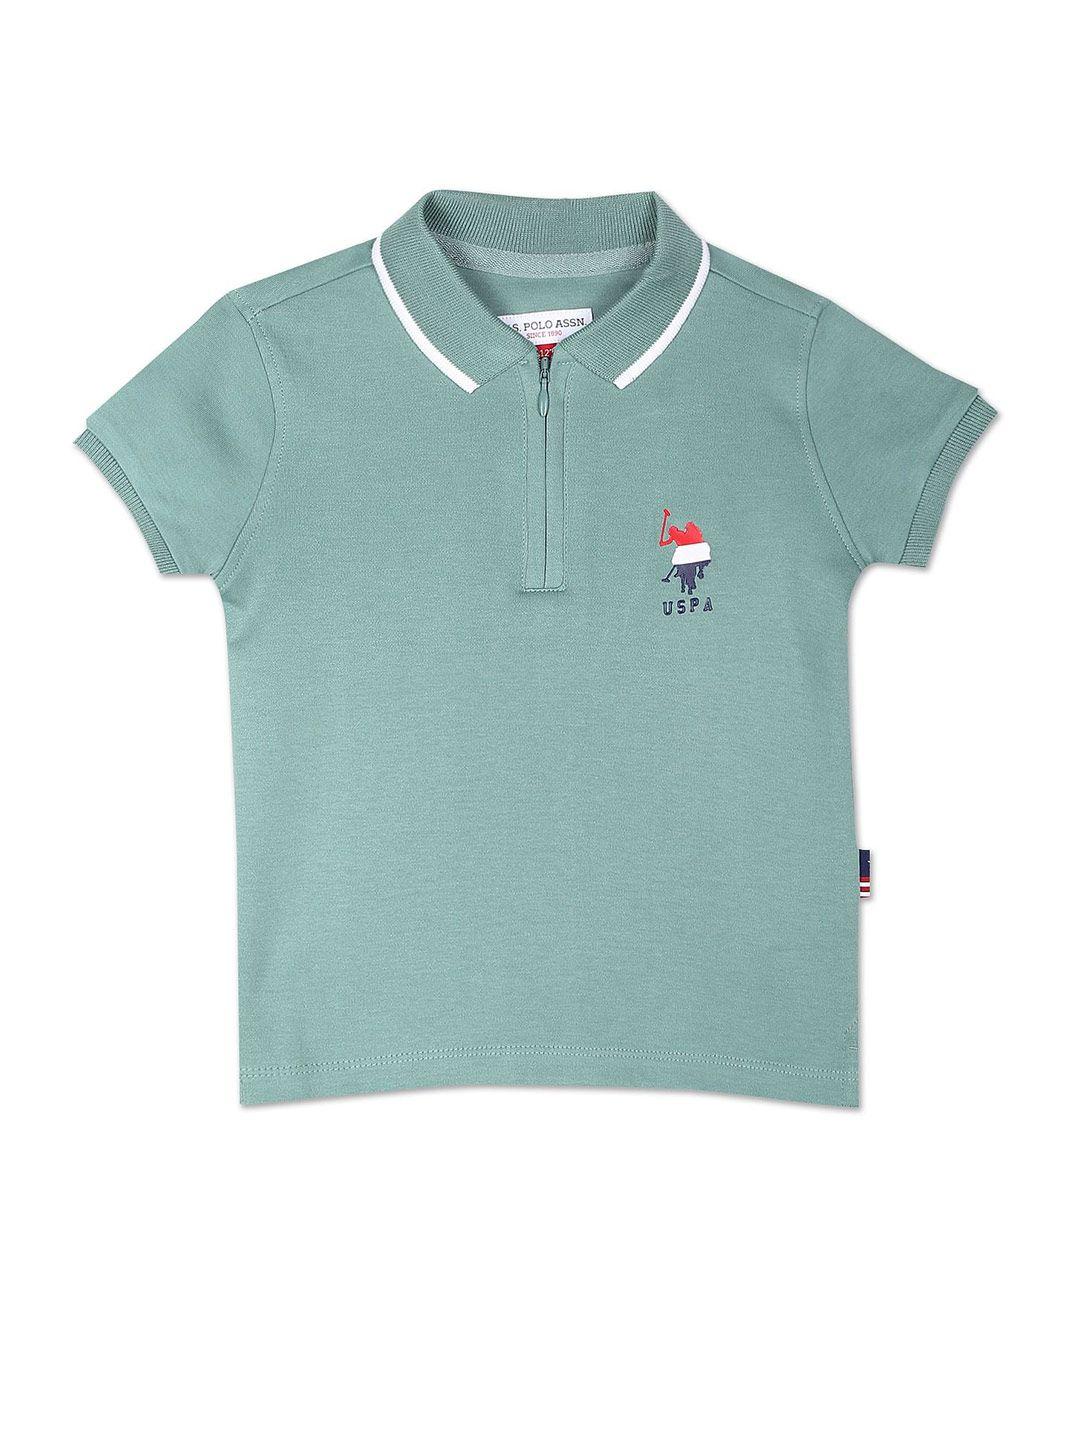 u.s. polo assn. kids boys polo collar pure cotton t-shirt